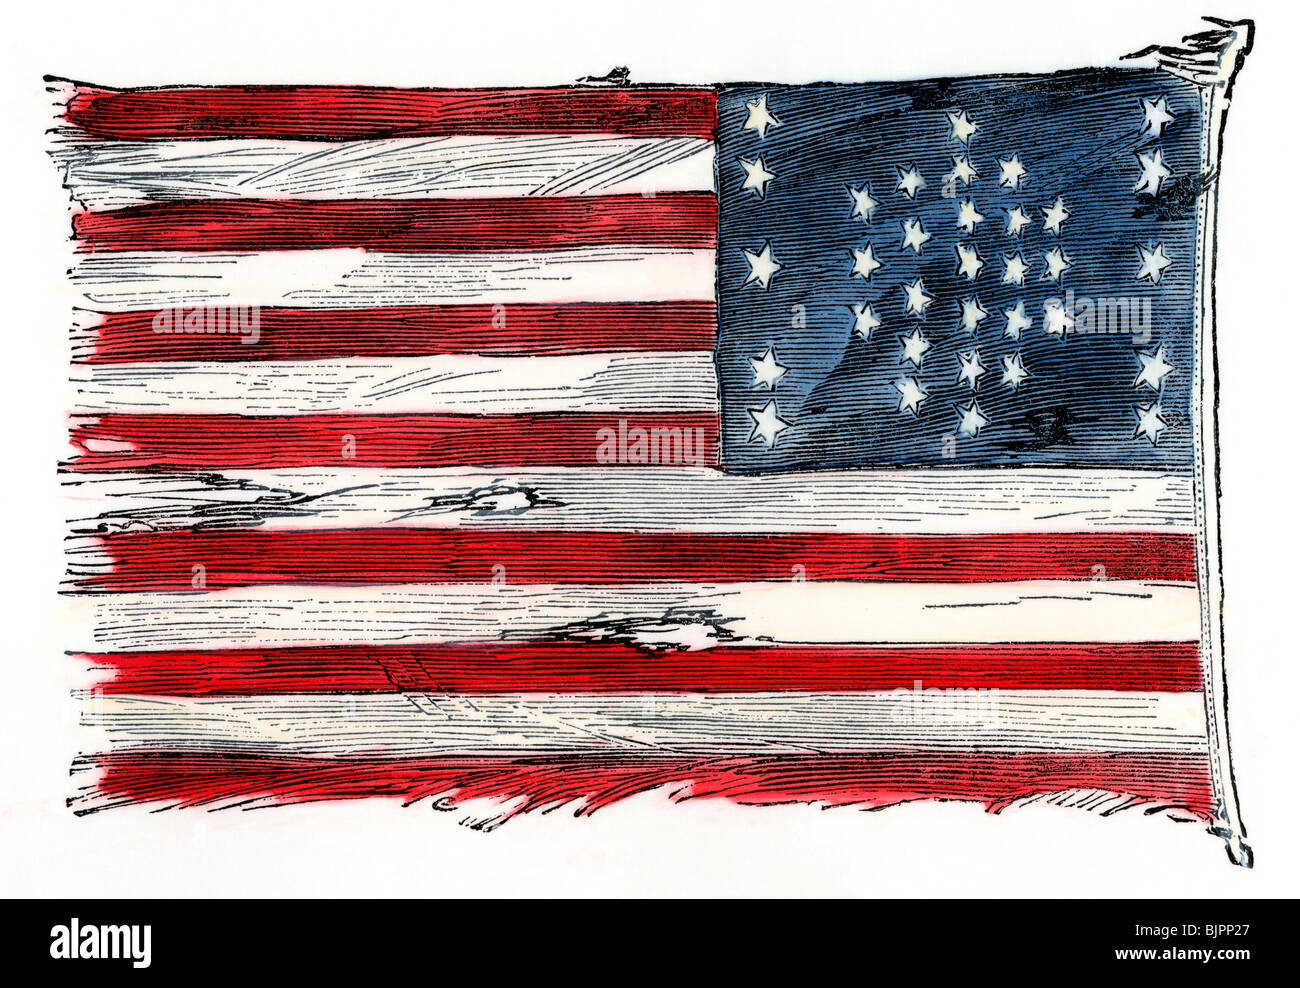 Fort Sumter siamo noi bandiera dopo il bombardamento, come sollevata a New York nel 1861 da importanti Anderson, Sumter commander. Colorate a mano la xilografia Foto Stock